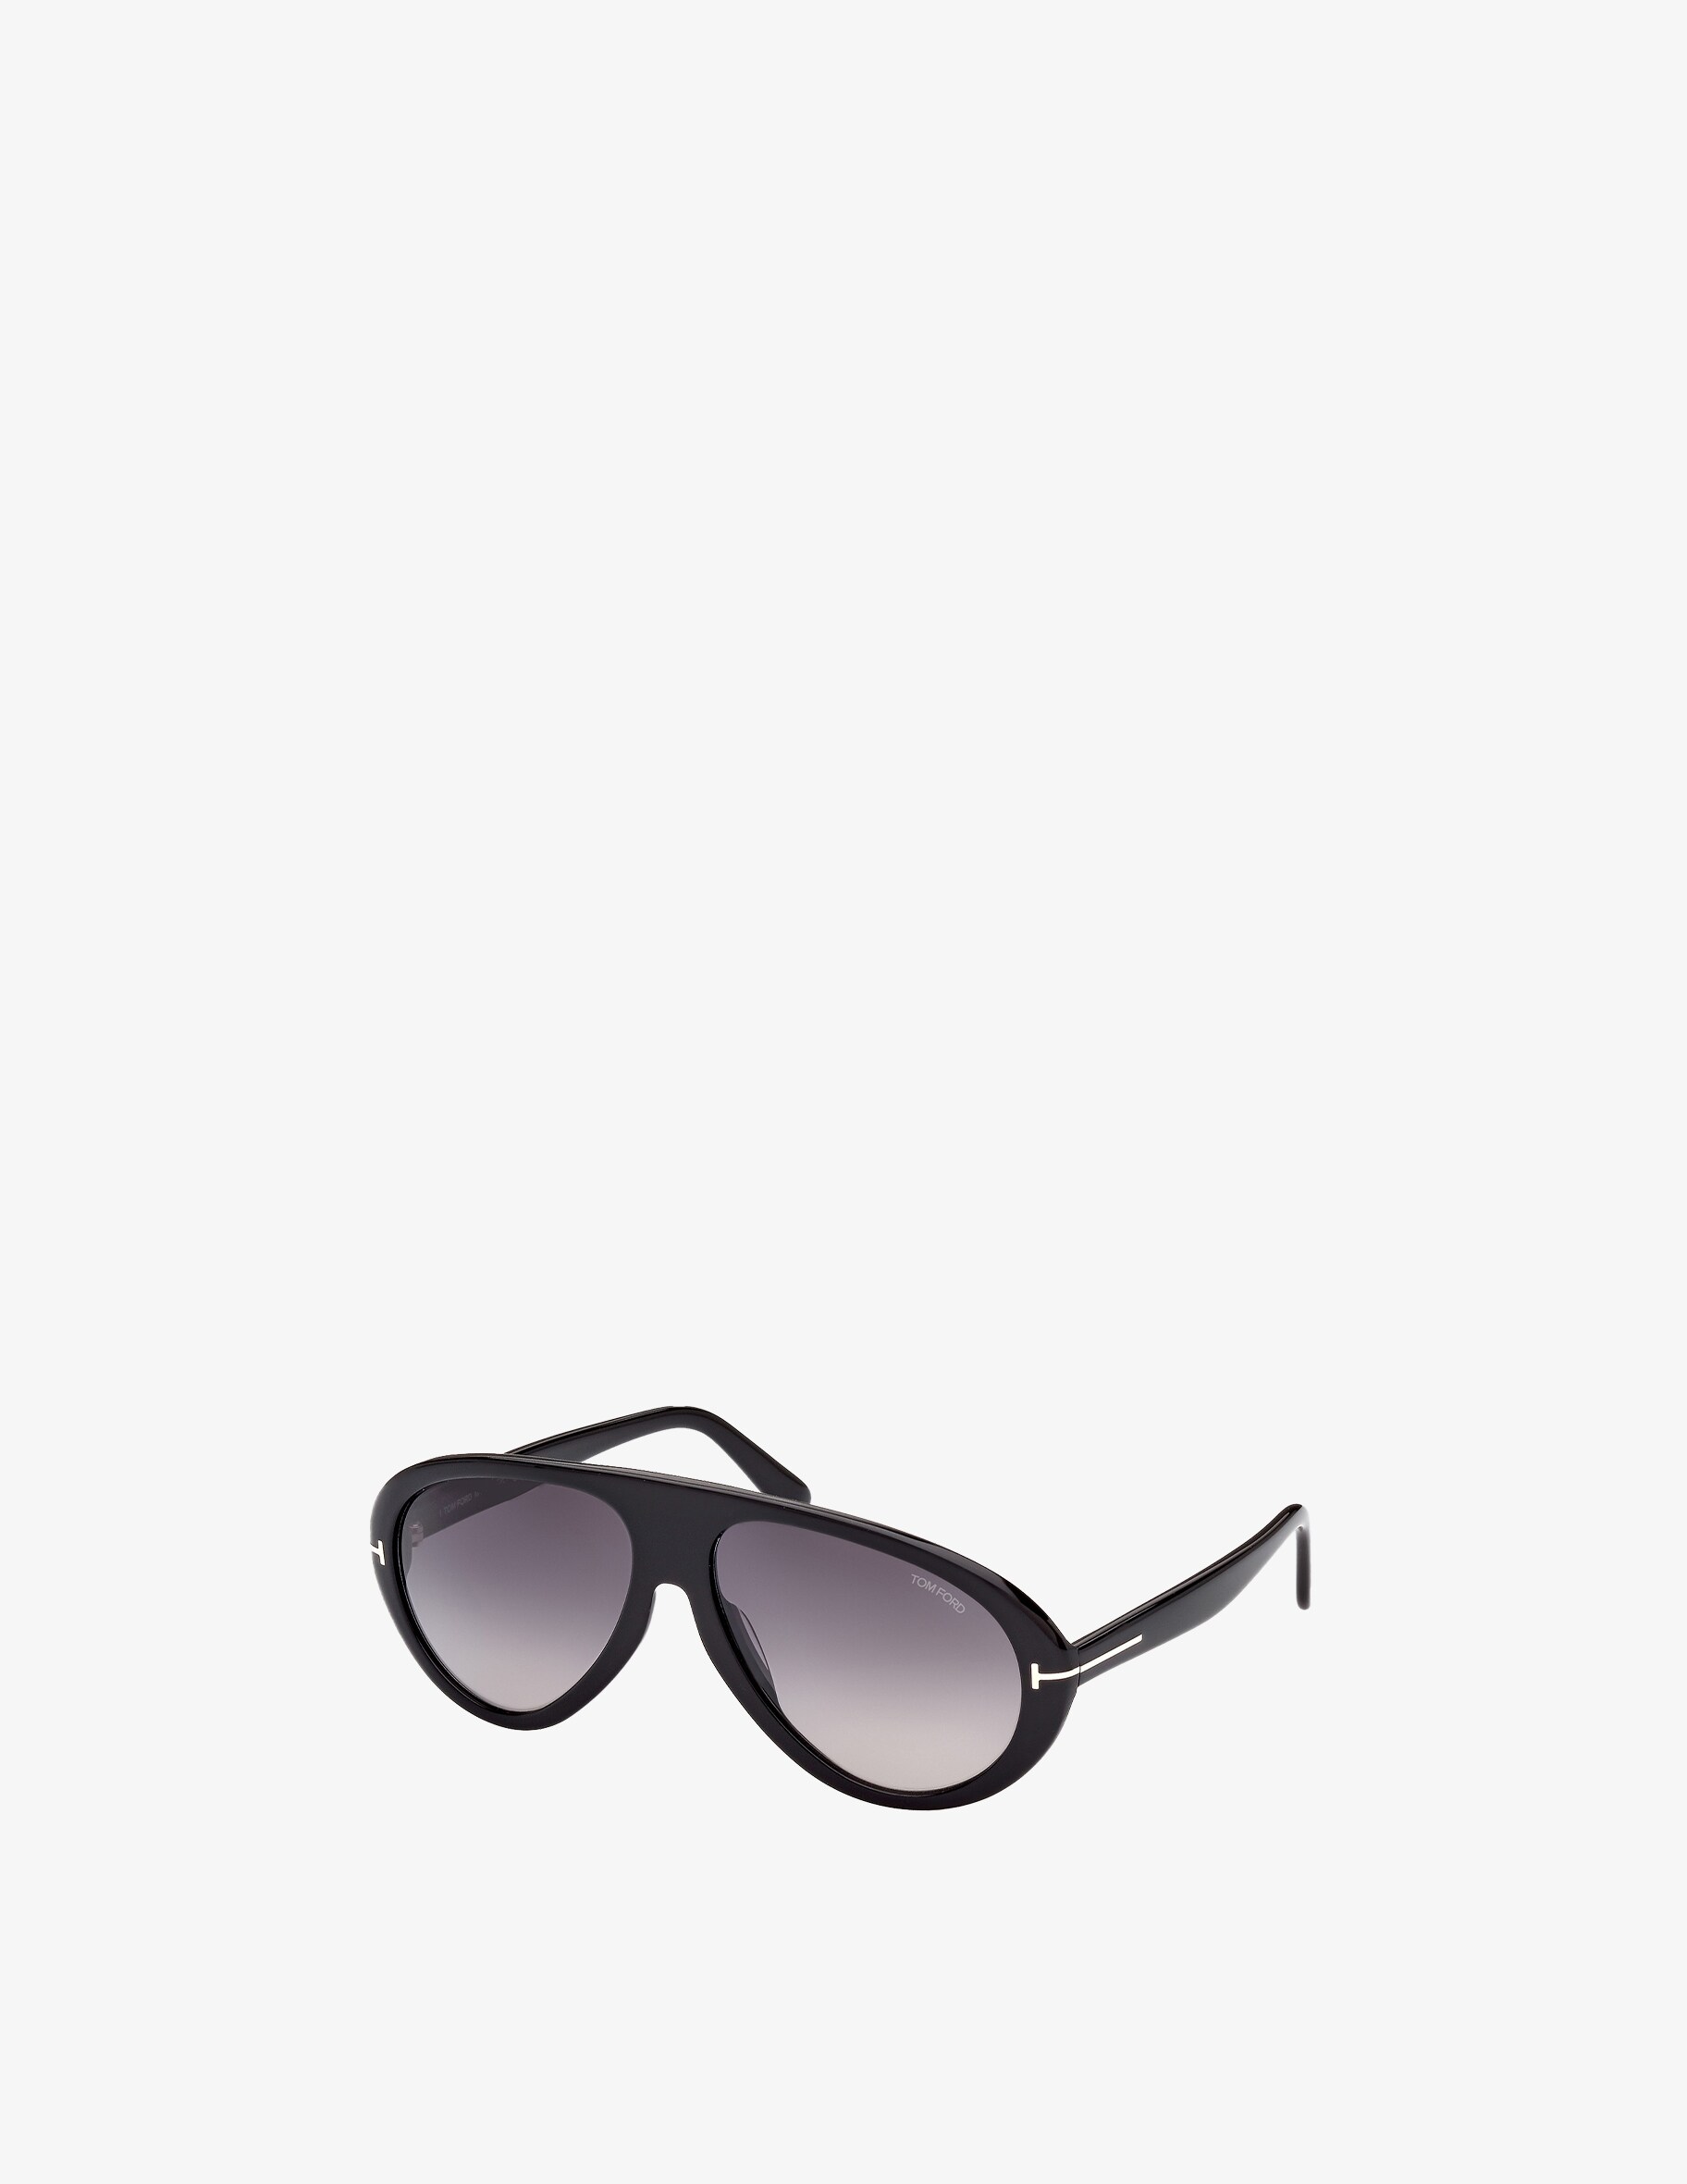 цена Солнцезащитные очки-авиаторы Tom Ford, цвет Nero / Black